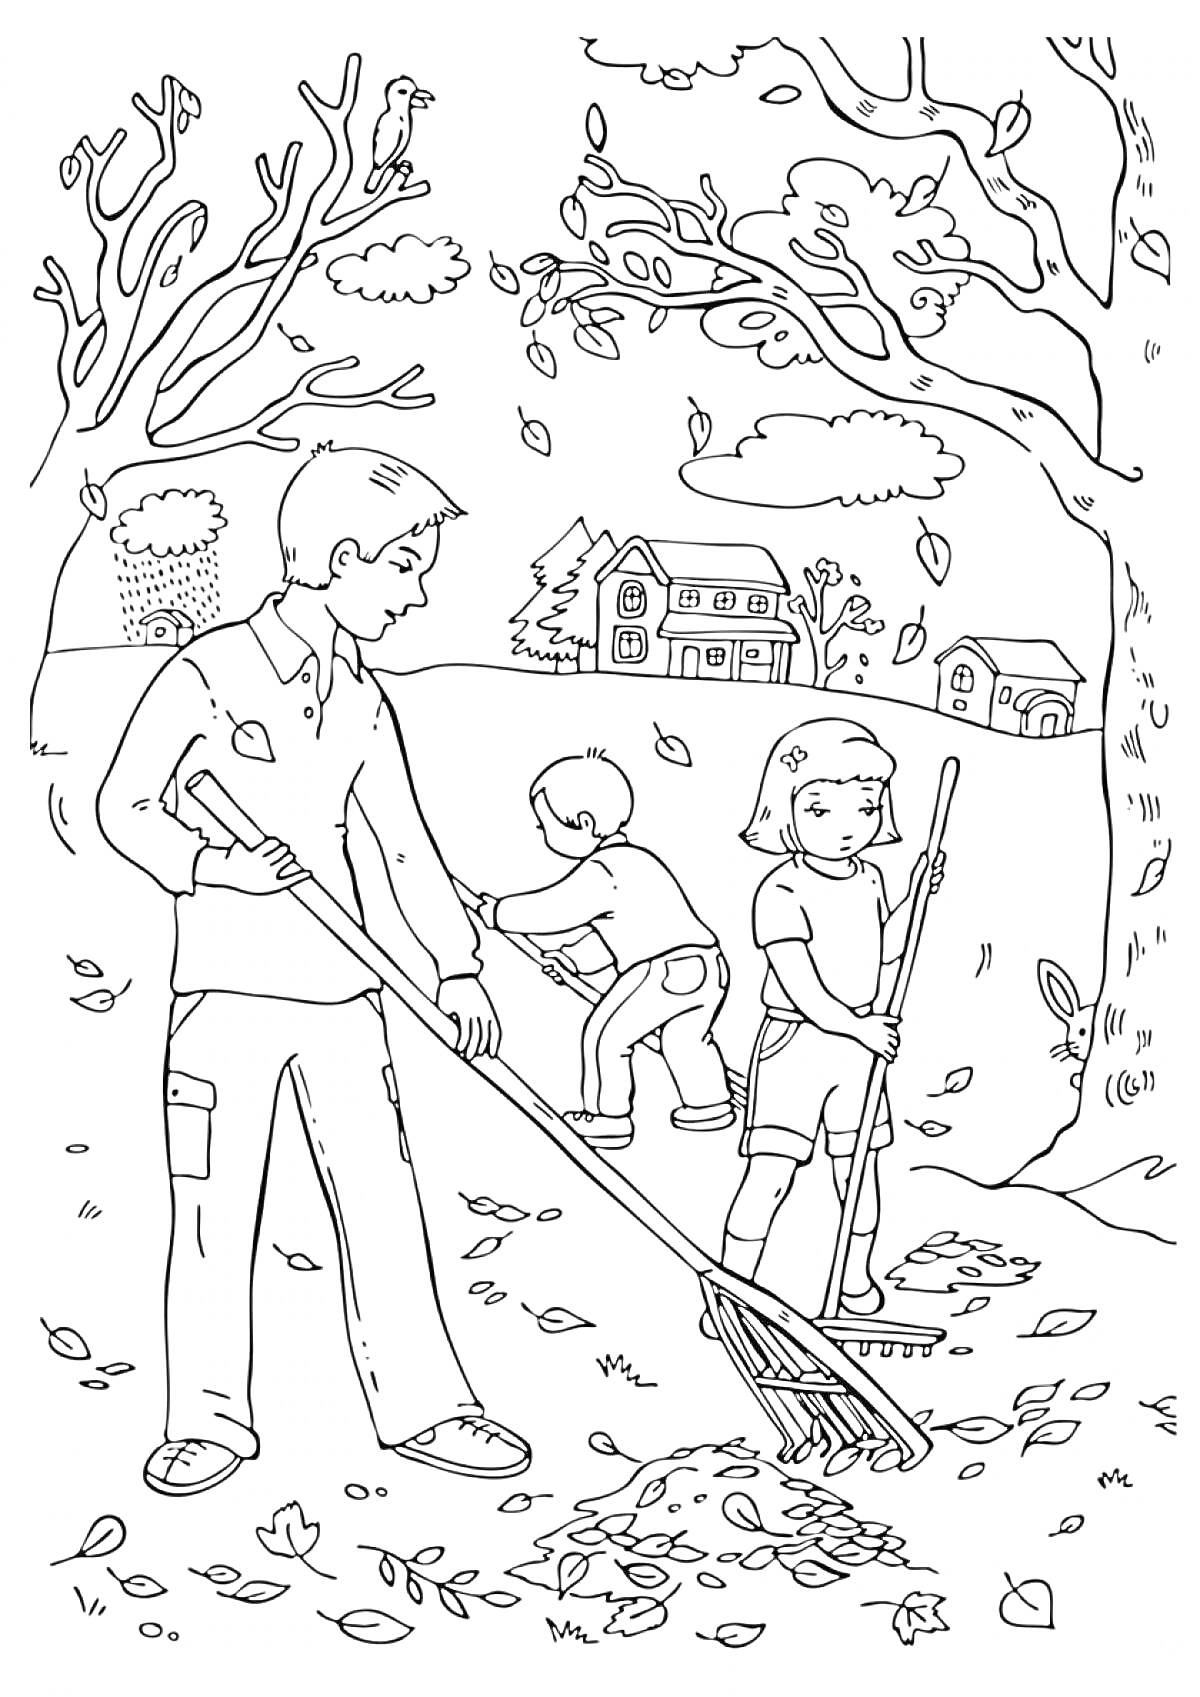 Сбор осенних листьев в парке, мужчина и двое детей, грабли, дома на заднем плане, высокие деревья с опадающими листьями